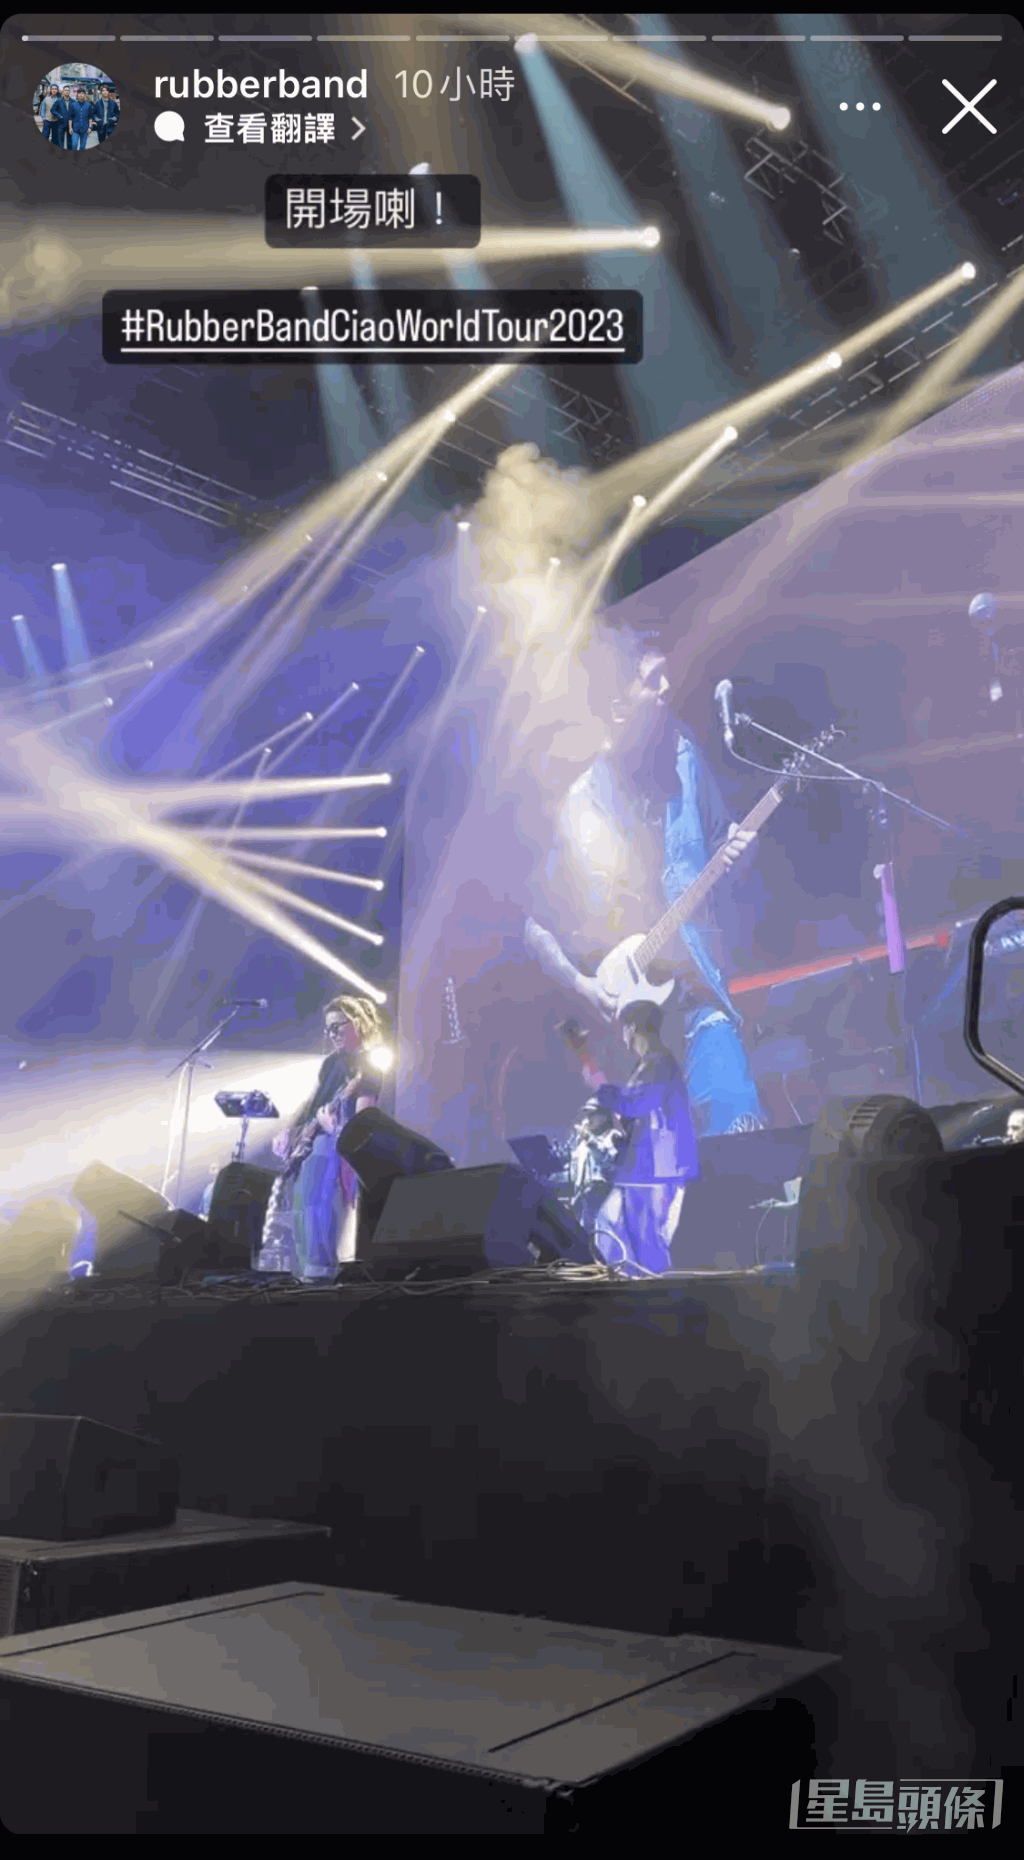 RubberBand昨晚在倫敦舉行演唱會，之後會到英國曼徹斯特、德國及荷蘭繼續開騷。